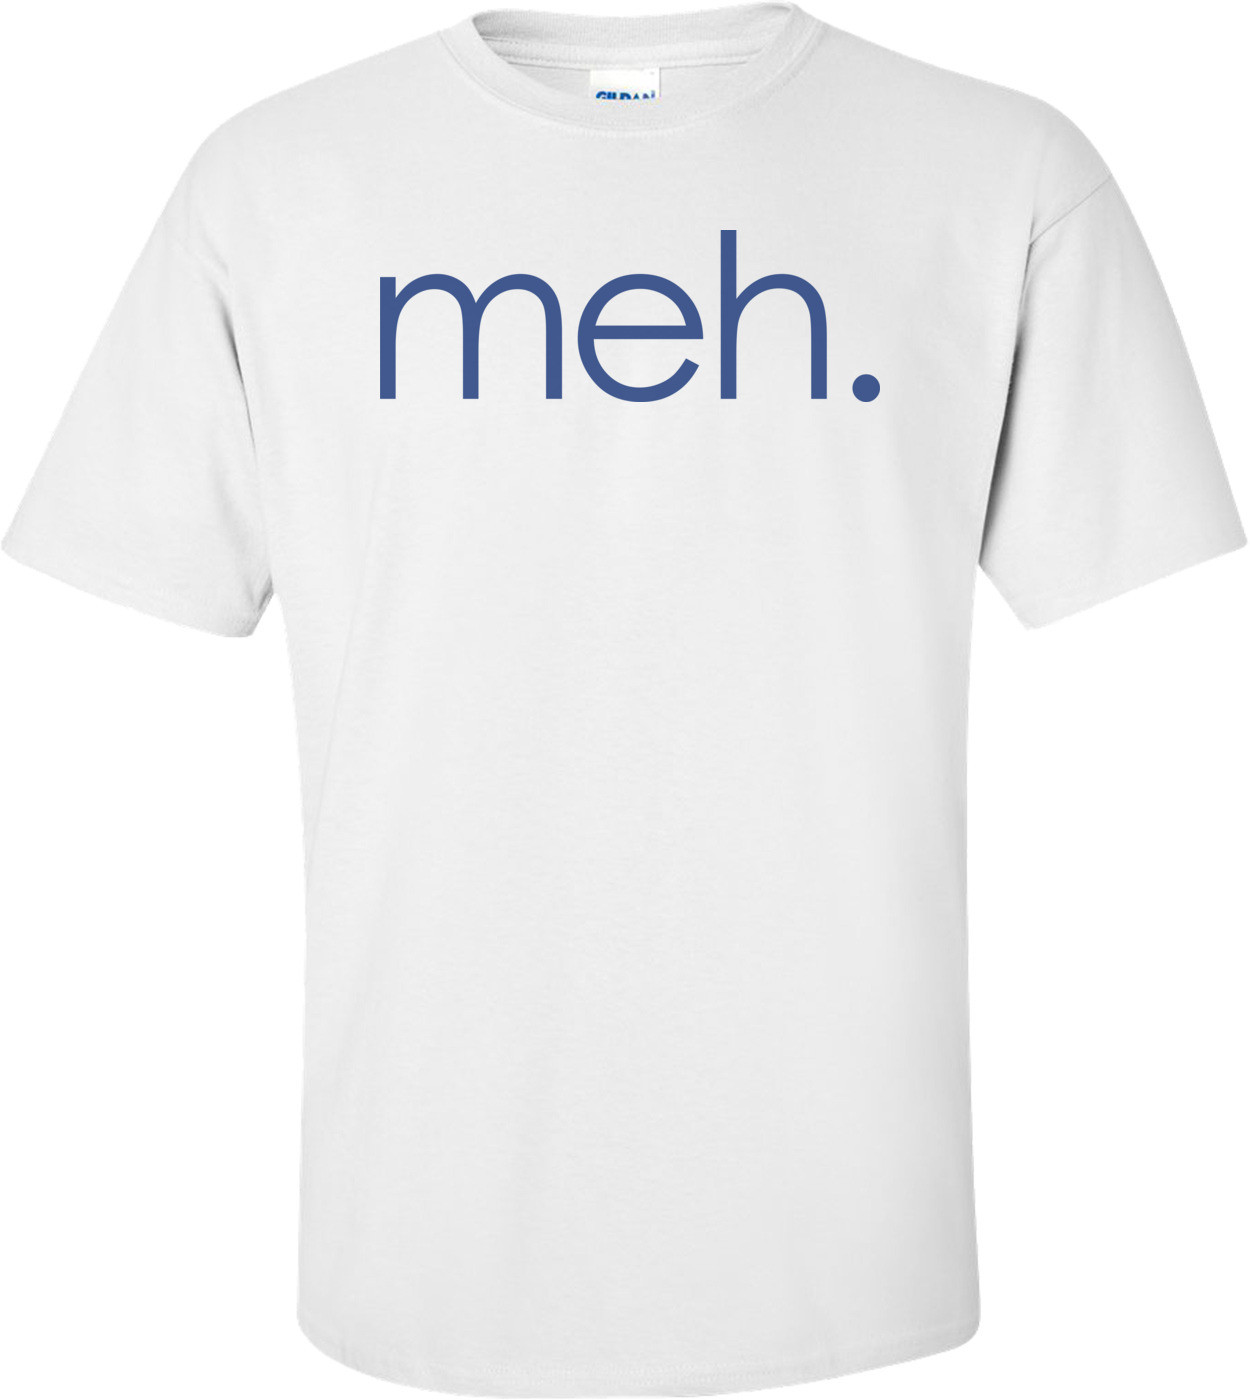 Meh. T-shirt